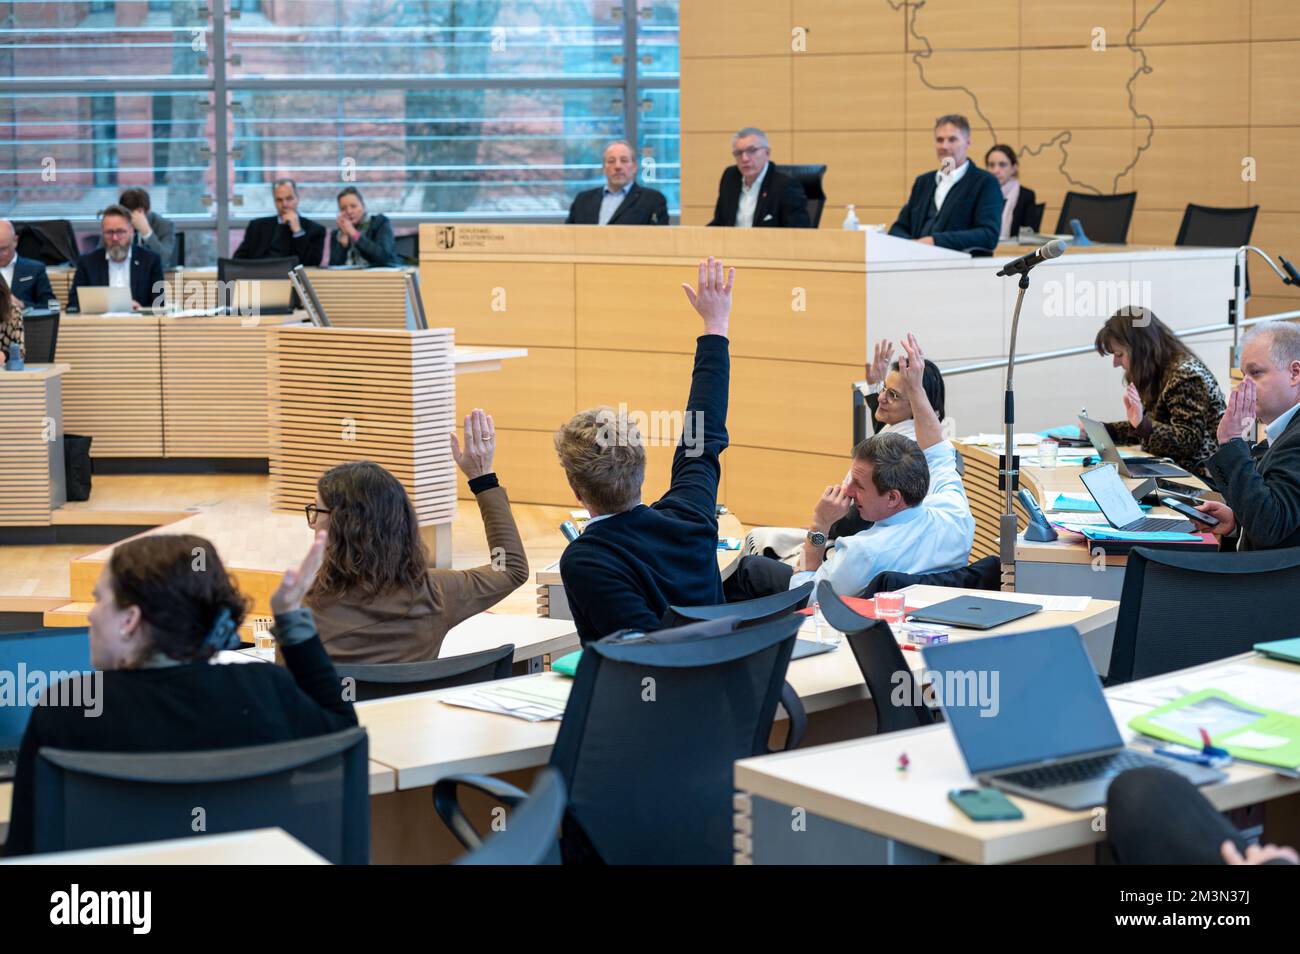 Plenarsitzung im Landeshaus Kiel Abgeordnete stimmen per Handzeichen ab Foto Stock